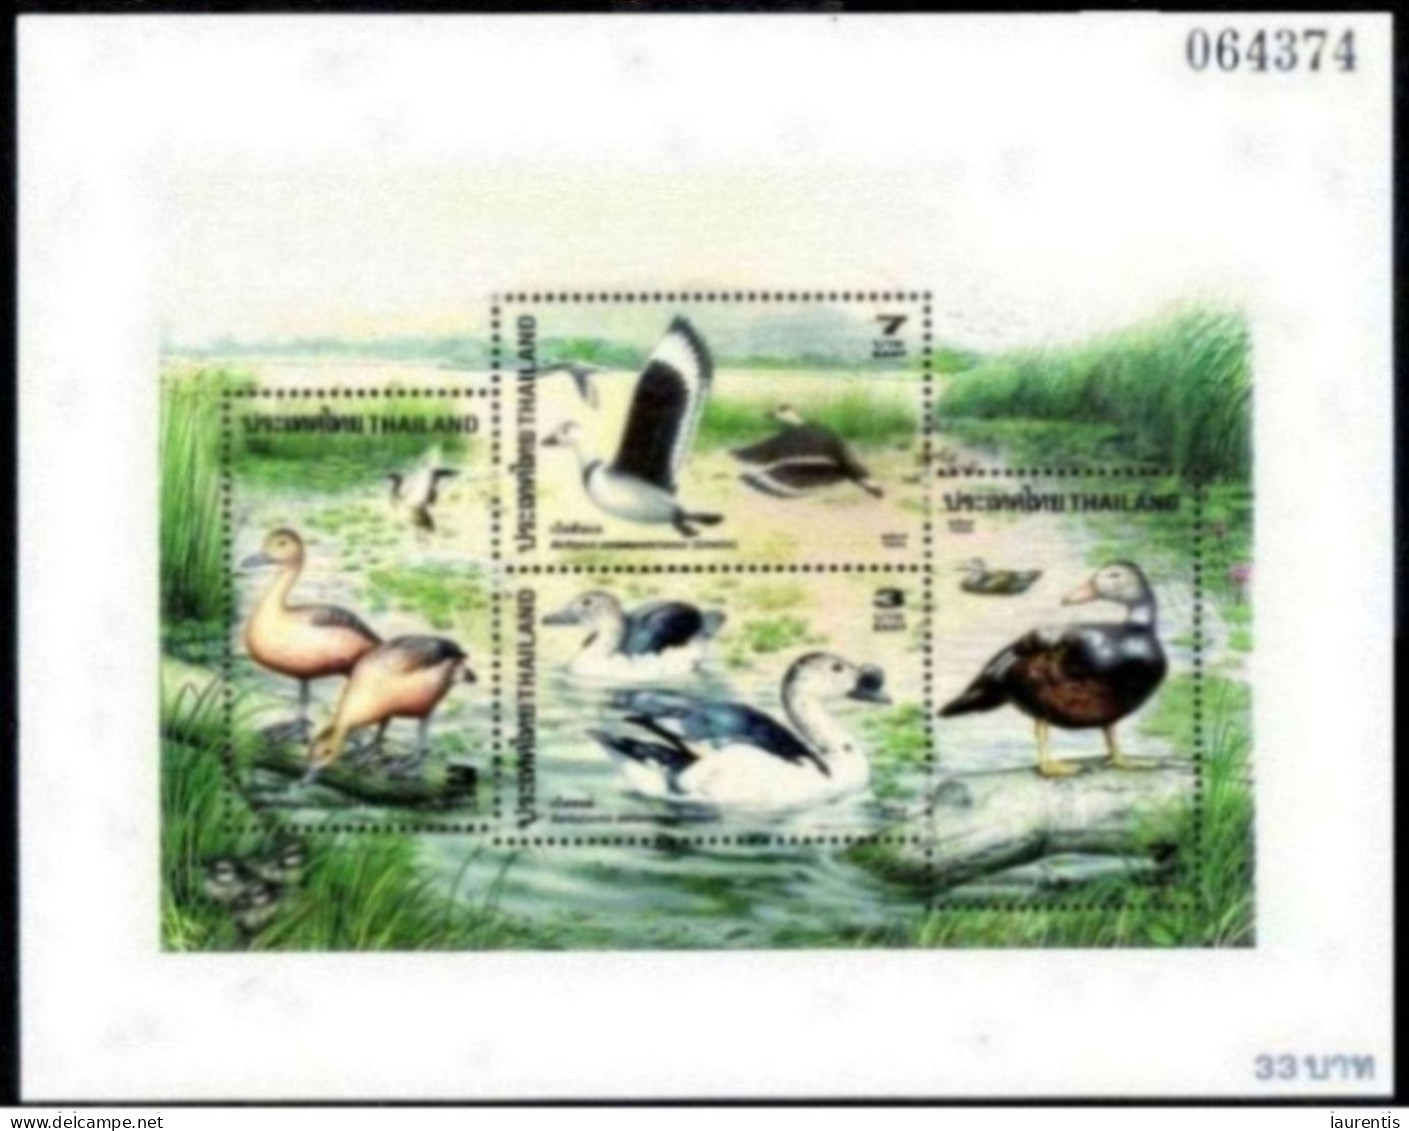 14645  Ducks - Canards - Thailandia - Bloc - MNH - 2,50 (8) - Eenden